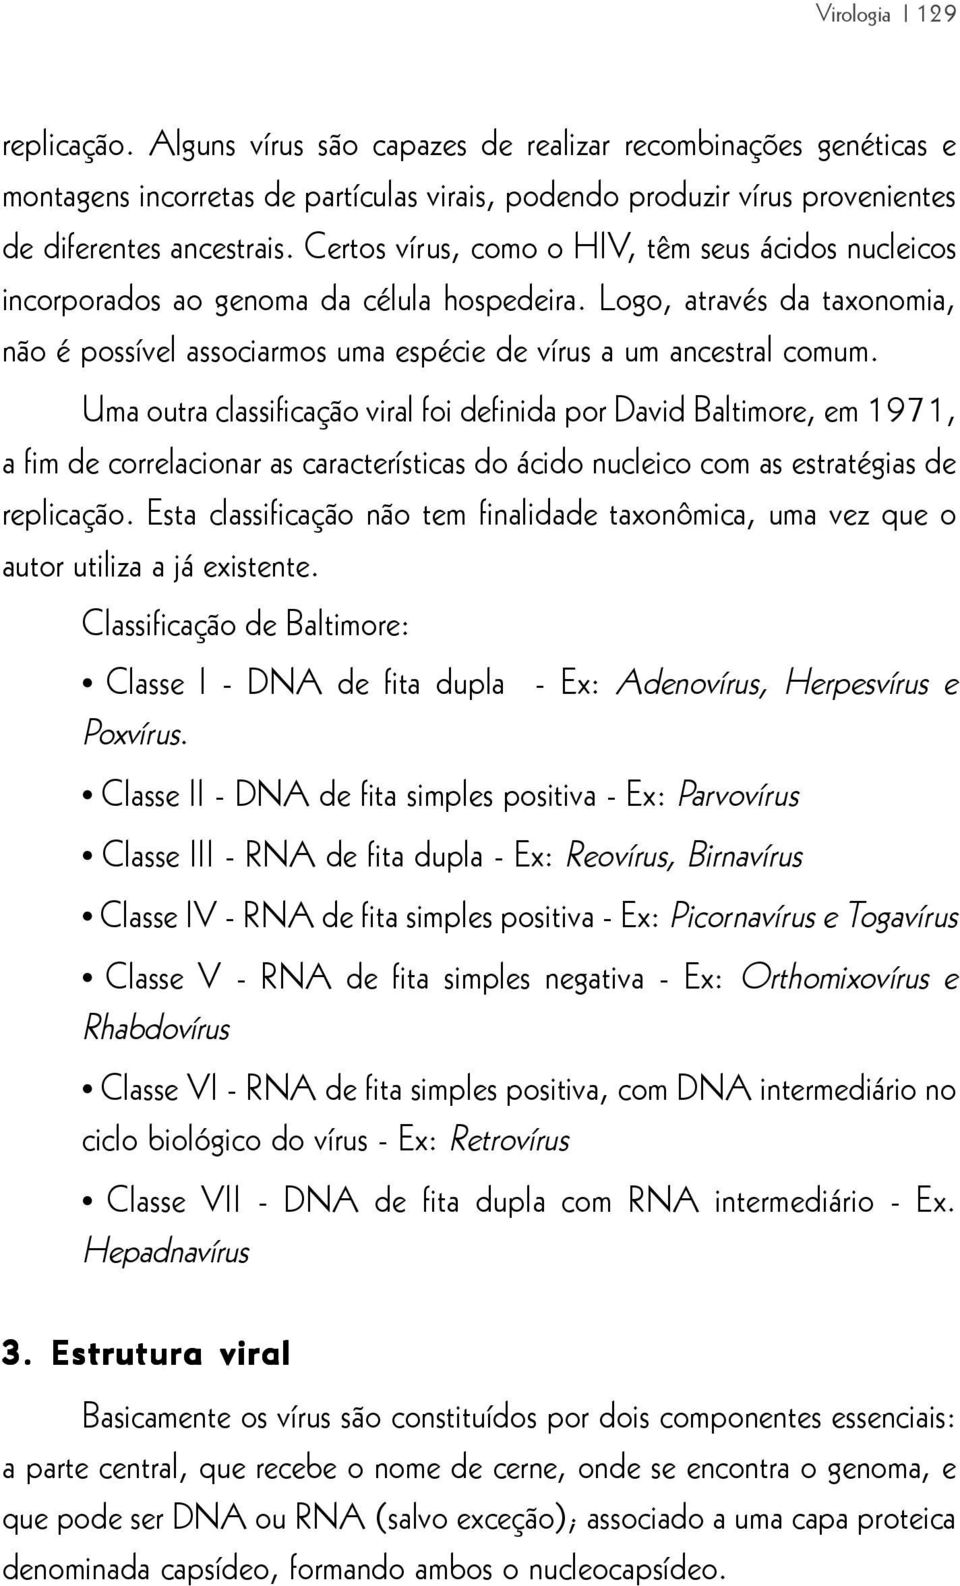 Uma outra classificação viral foi definida por David Baltimore, em 1971, a fim de correlacionar as características do ácido nucleico com as estratégias de replicação.